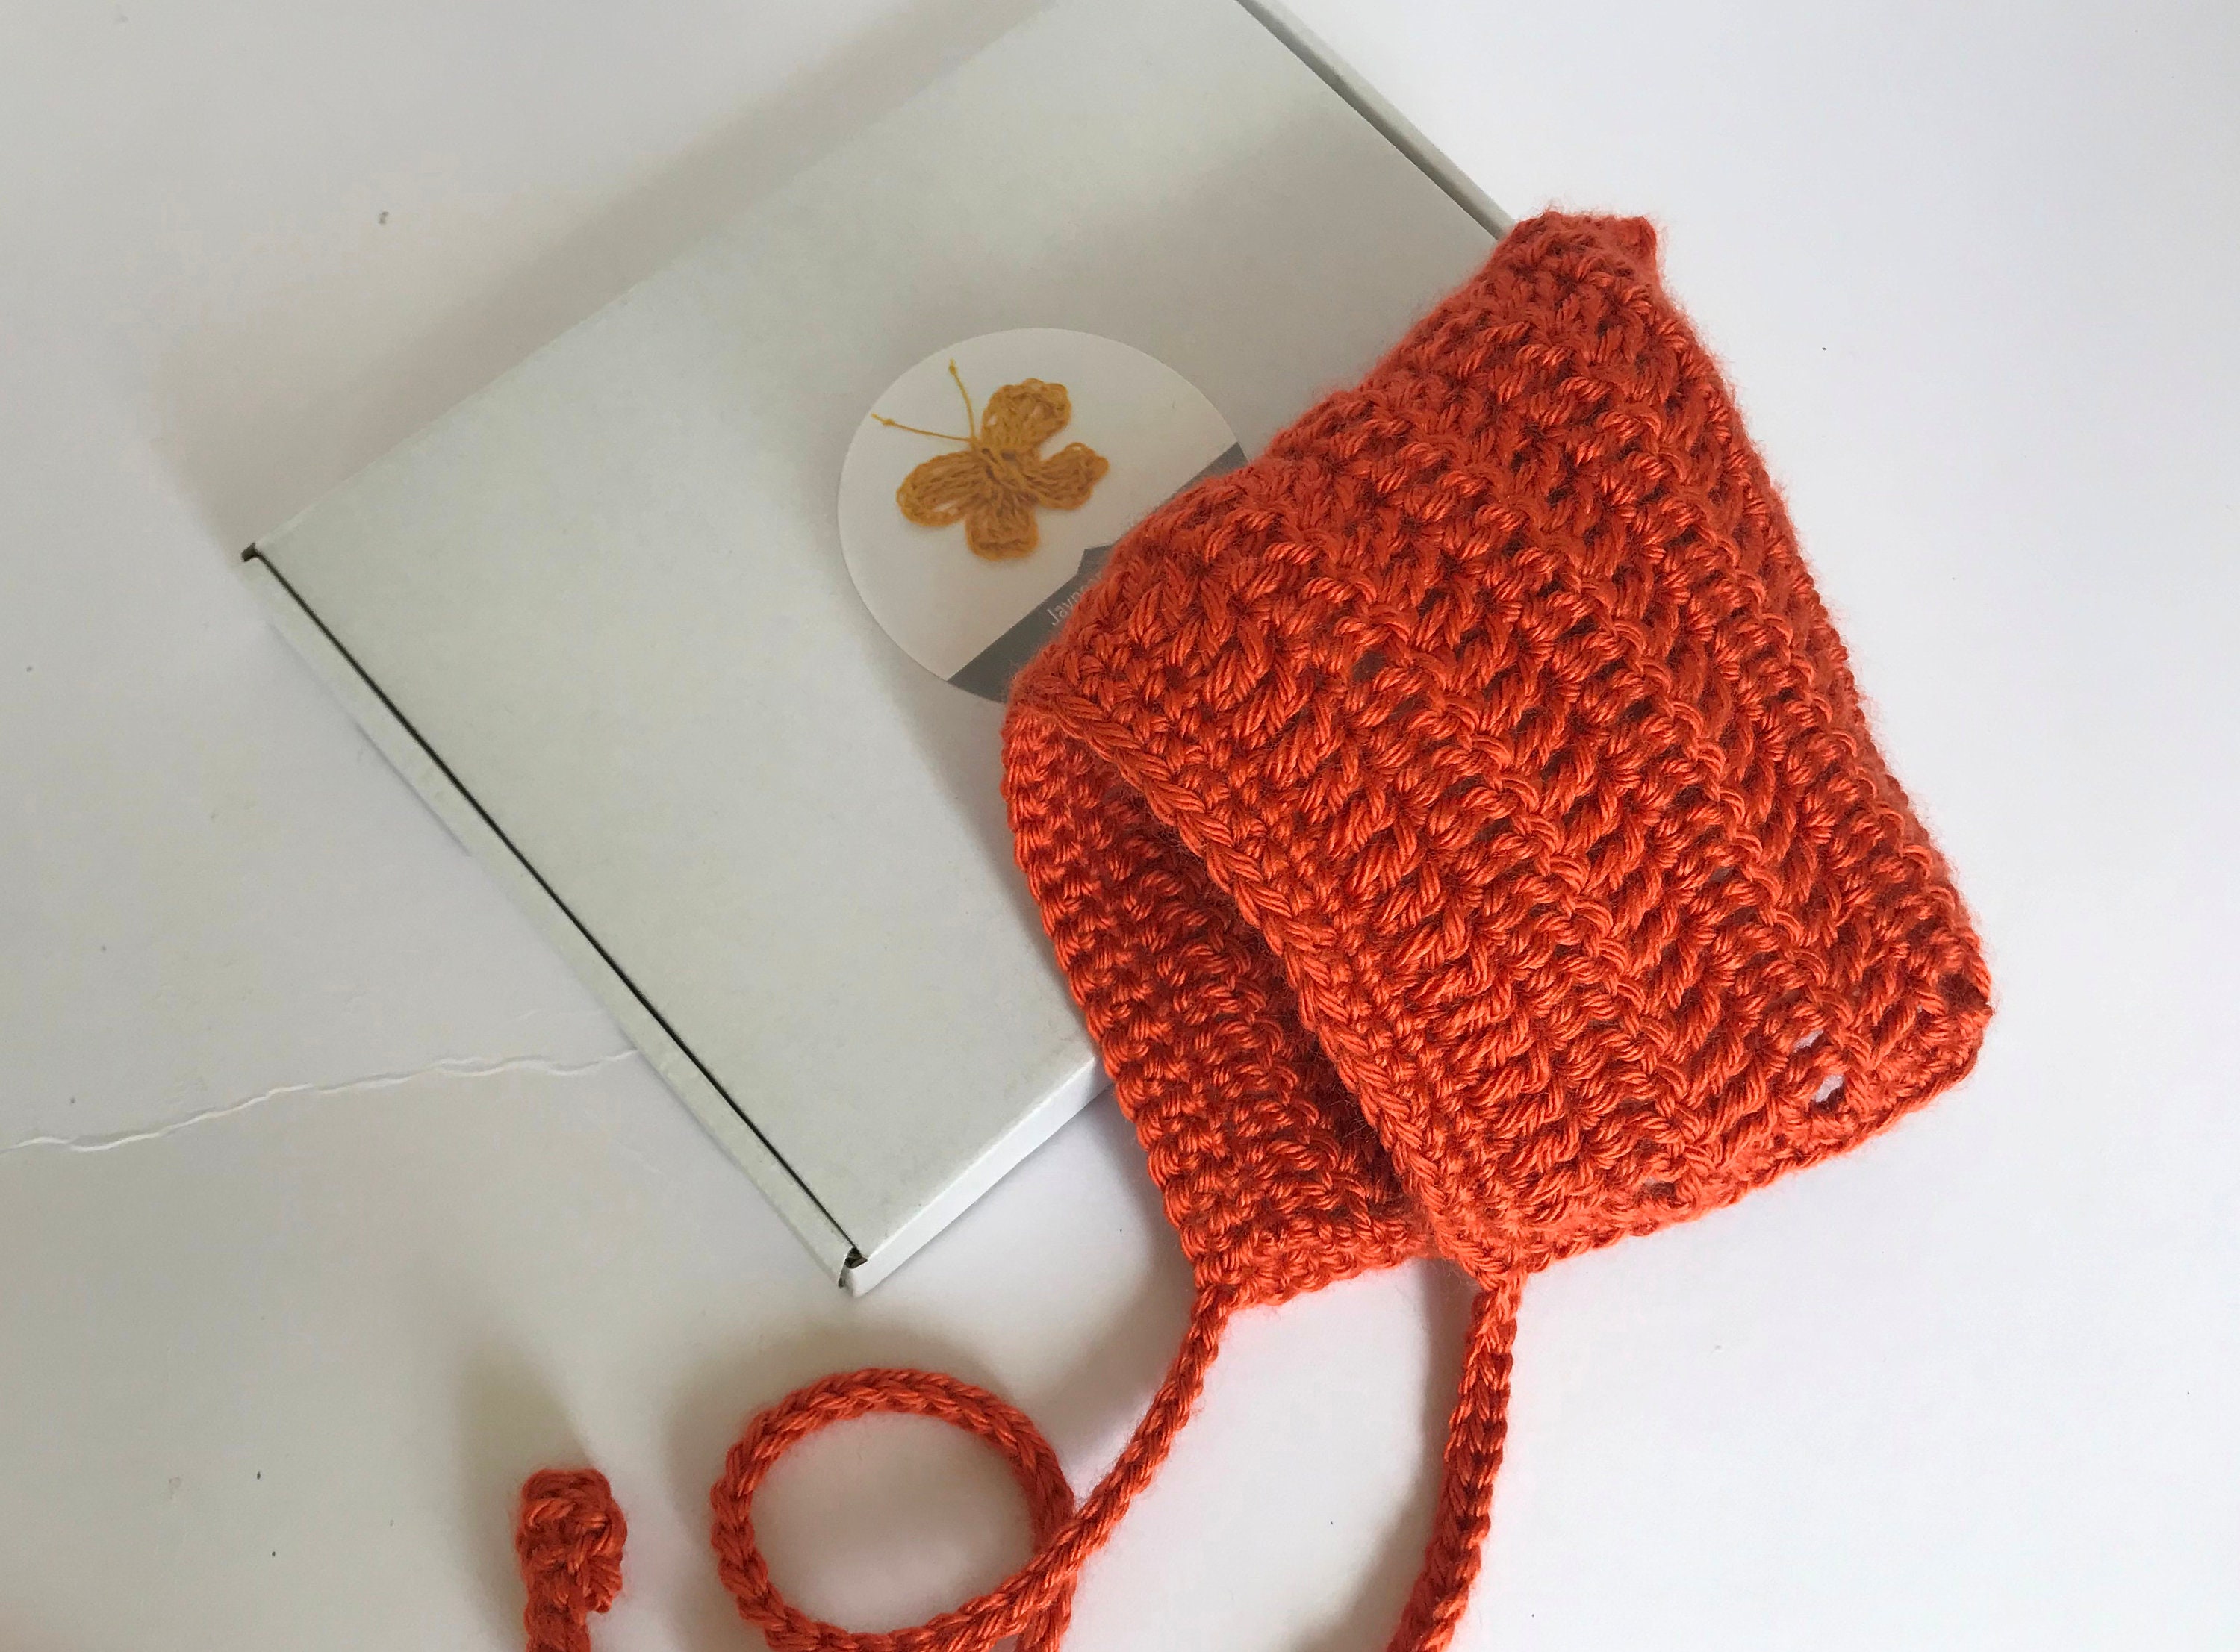 Crochet Pixie Hat. Crochet Baby Bonnet. Crochet Toddler Pixie | Etsy UK